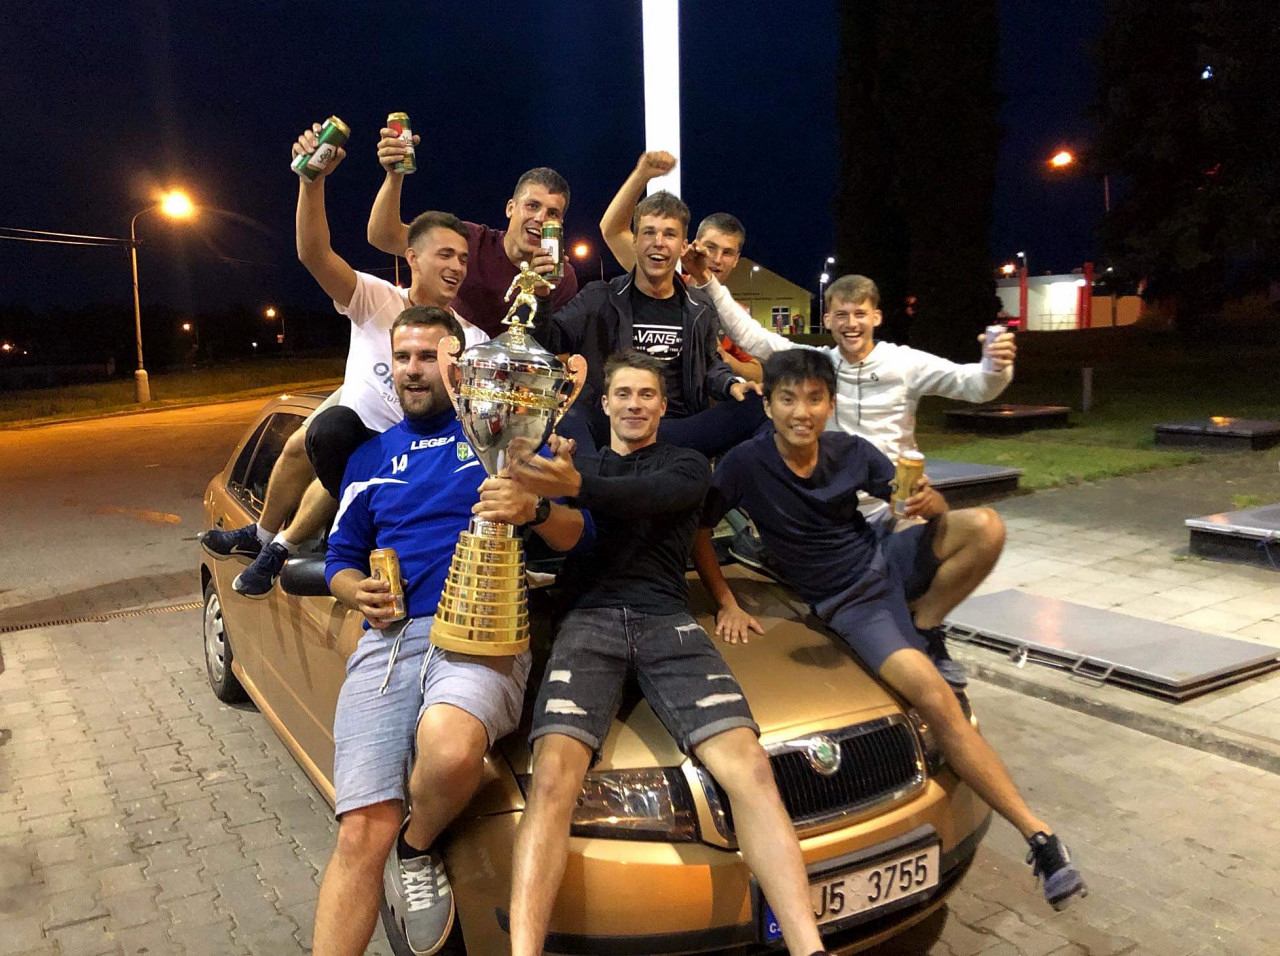 Vítězný turnaj Jistuza cup ve Studené 22. 6. 2019